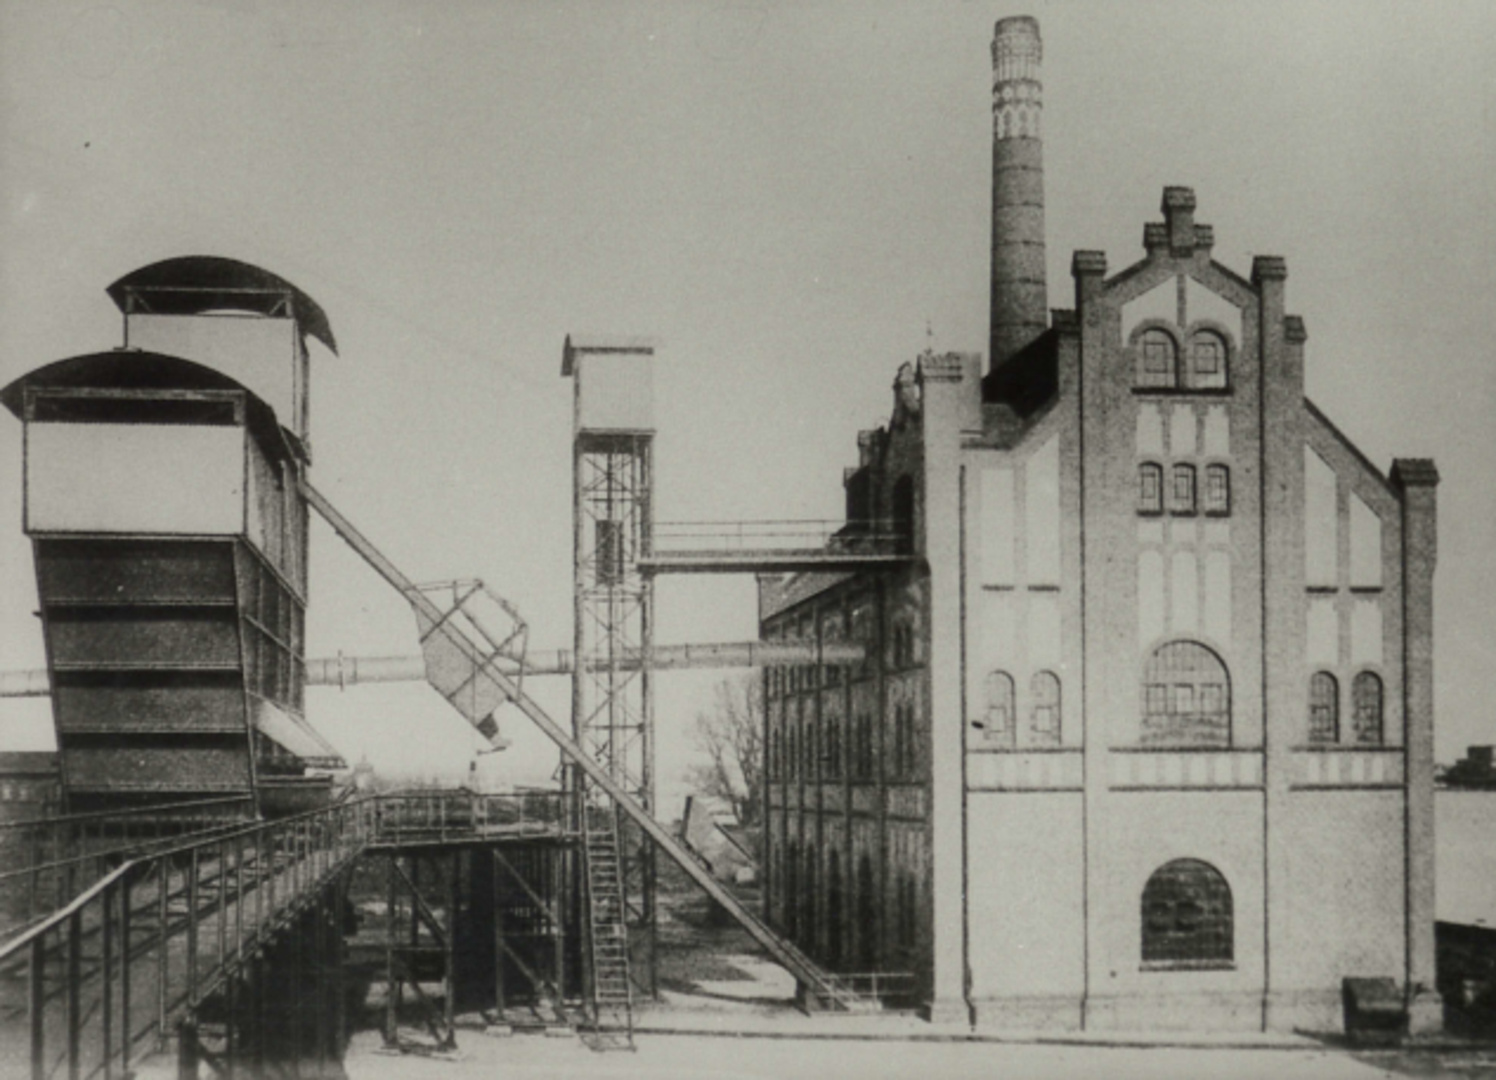 Gemeinde Gaswerk Spandau, Ofenhaus 1 mit Bekohlungsanlage, 1912